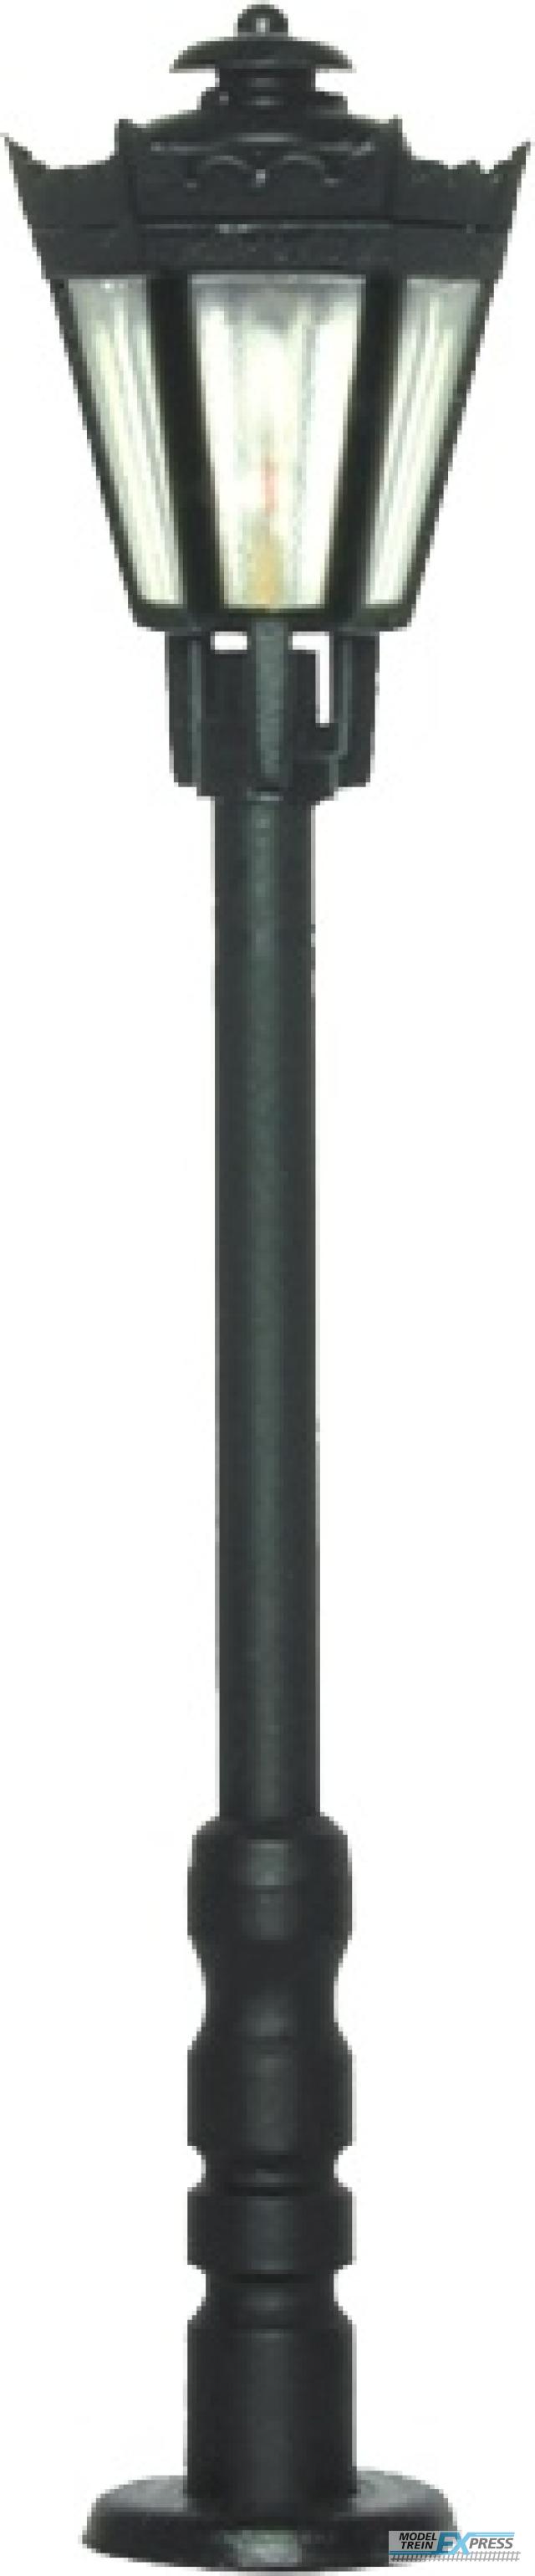 Viessmann 6071 H0 Parklaterne schwarz mit klarem Schirm,LED warmweiß